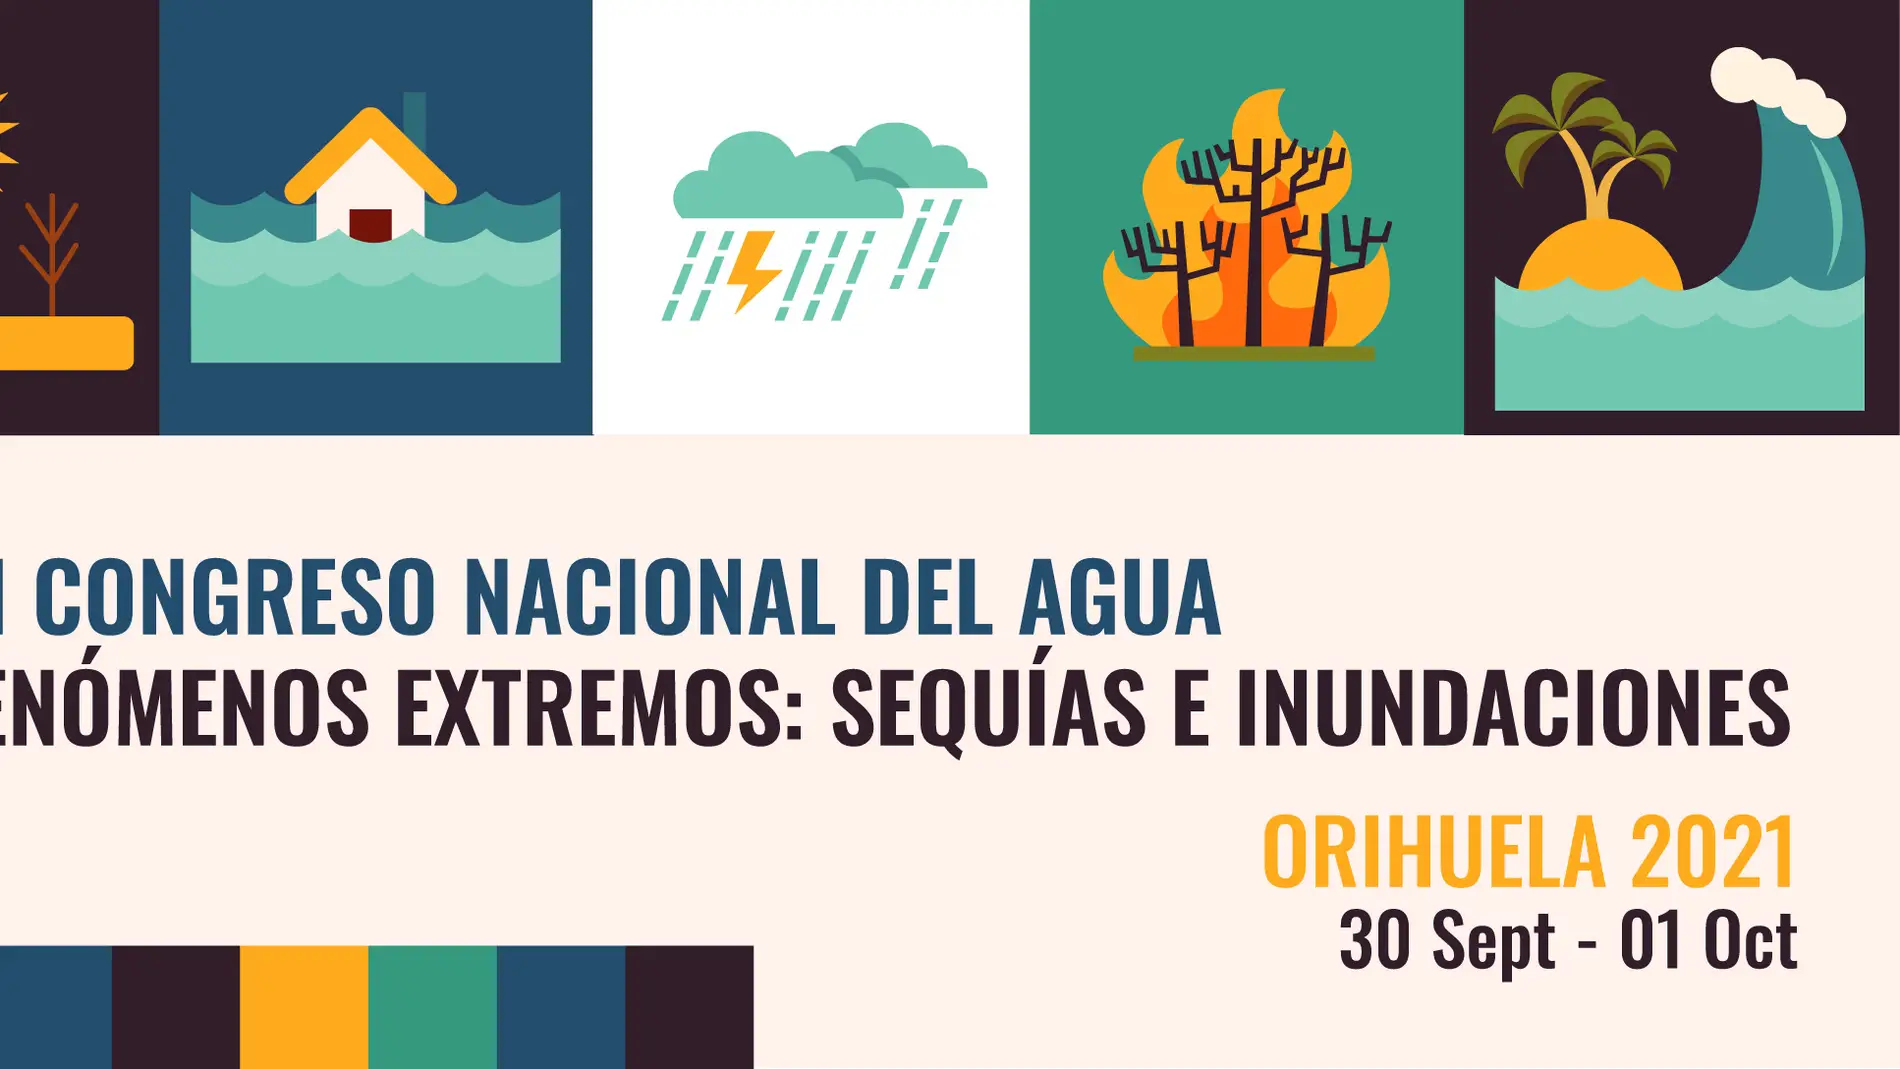 El III Congreso Nacional del Agua de Orihuela versará sobre ‘Fenómenos extremos: sequía e inundaciones’      